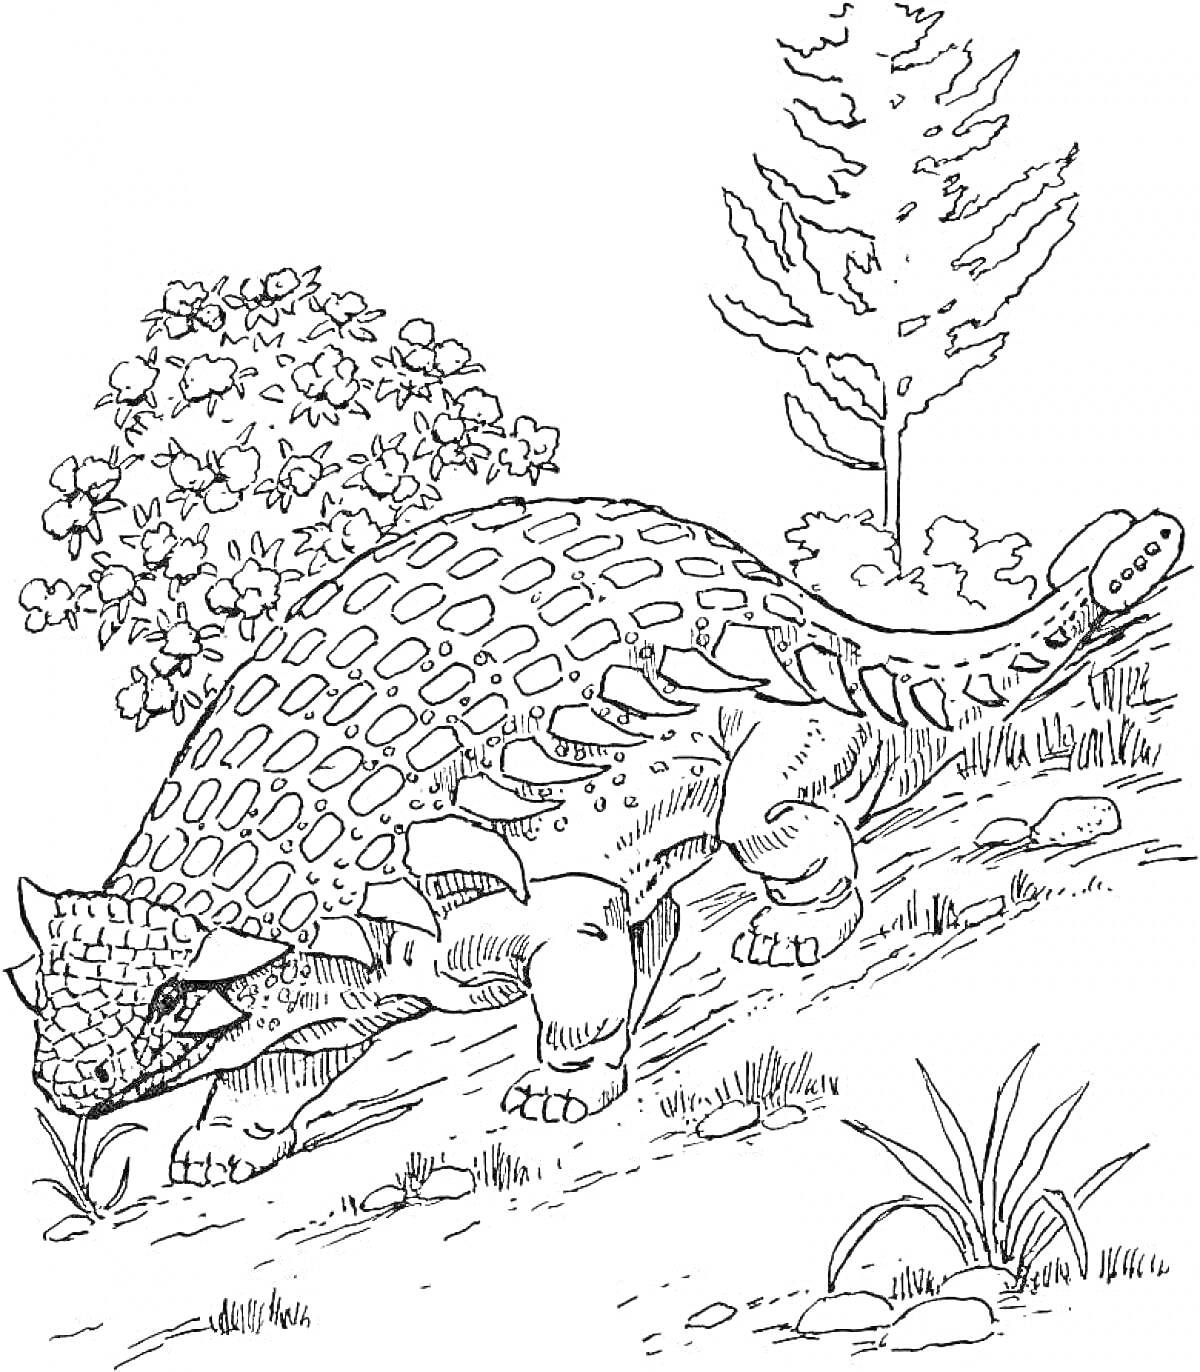 анкилозавр на склоне с растительностью (дерево и куст)